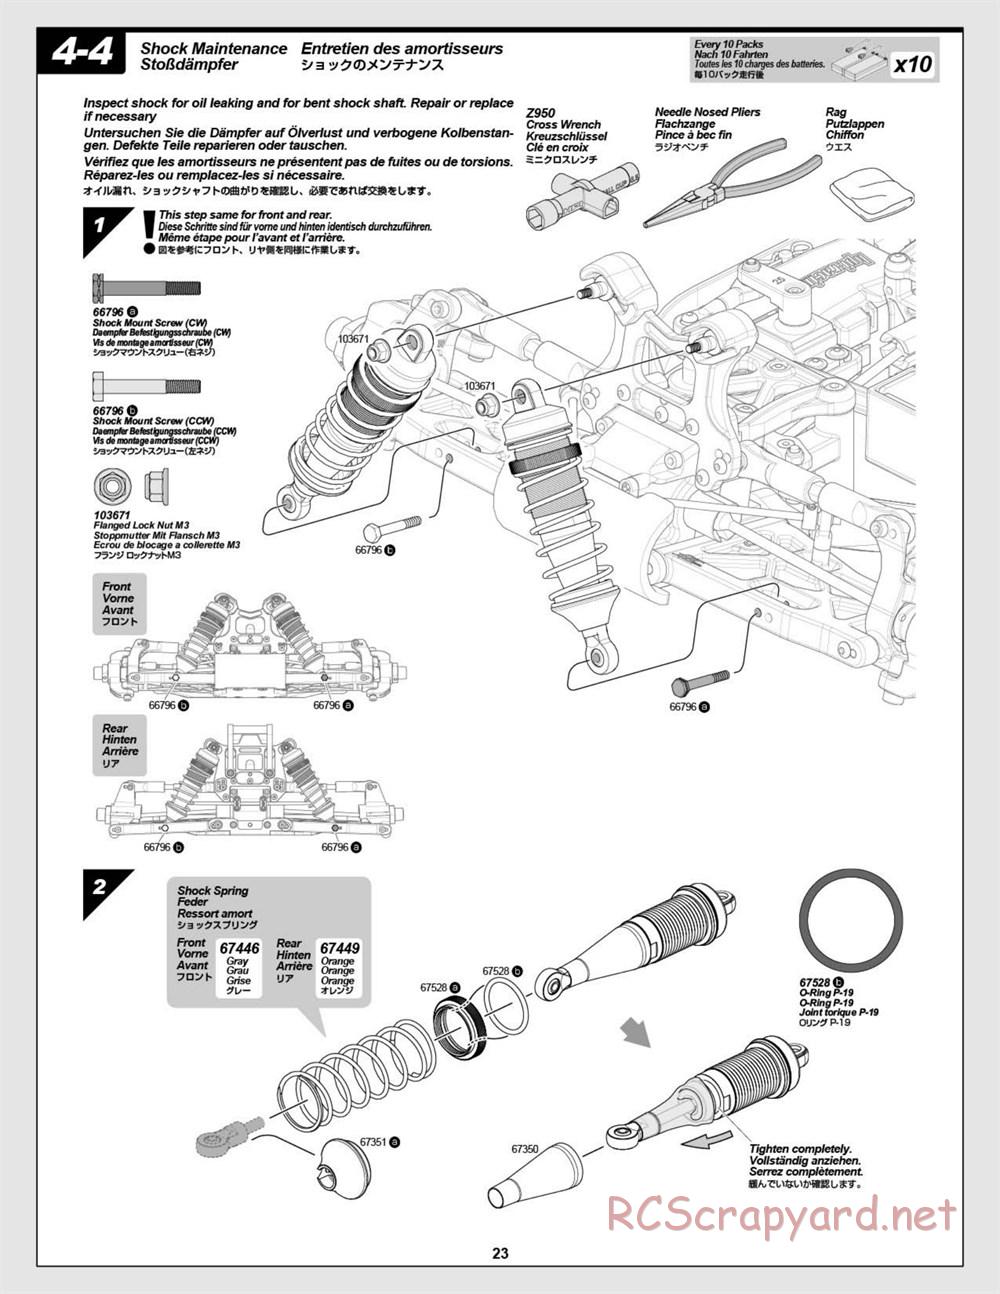 HPI - Vorza Flux HP - Manual - Page 23